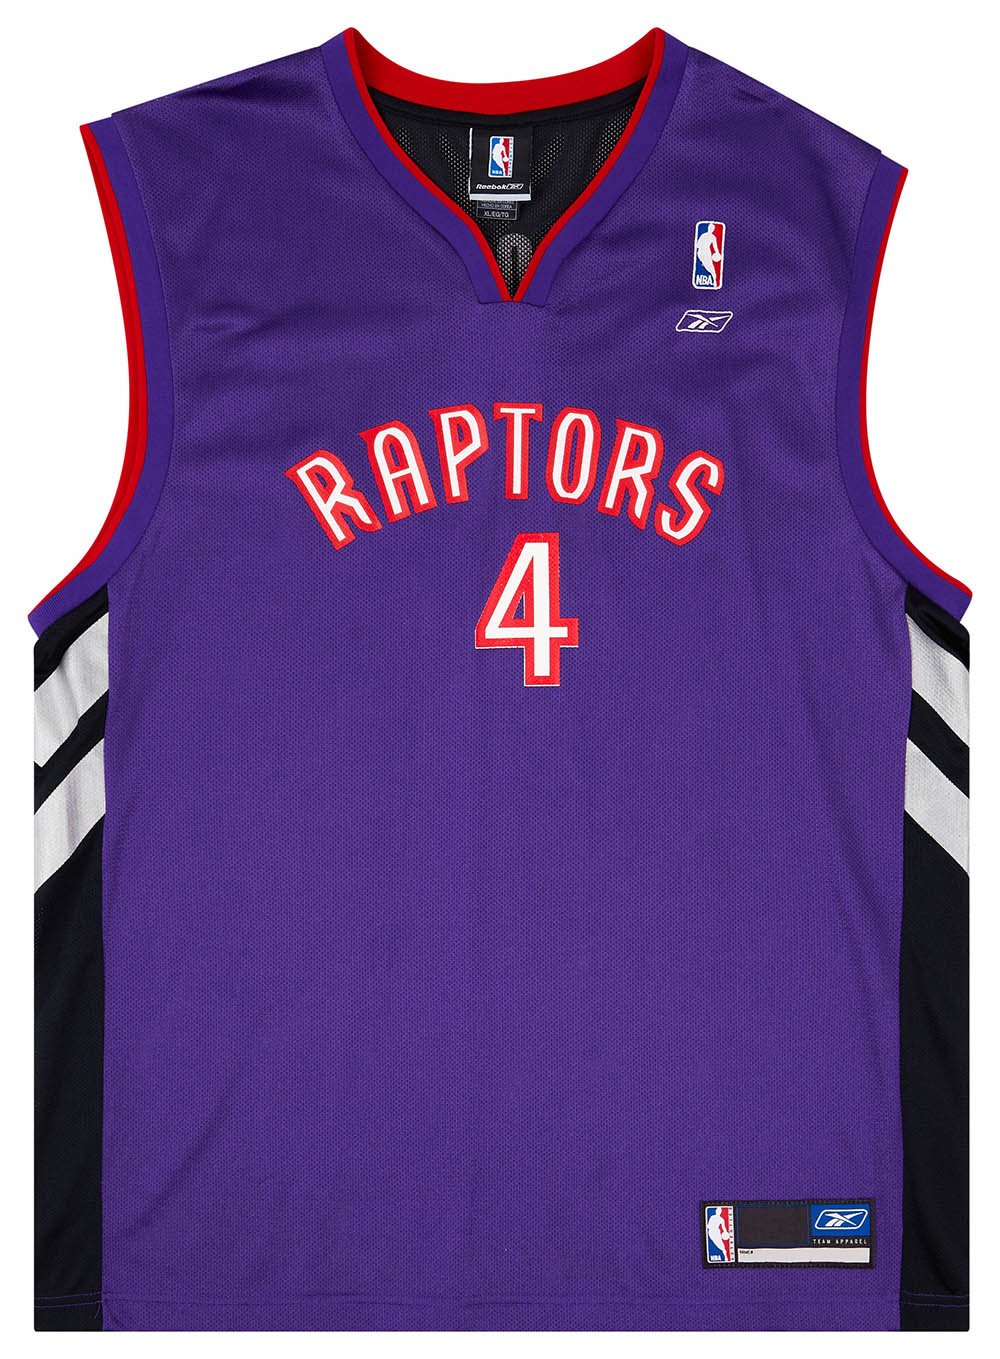 Outerwear - Toronto Raptors Apparel & Jerseys